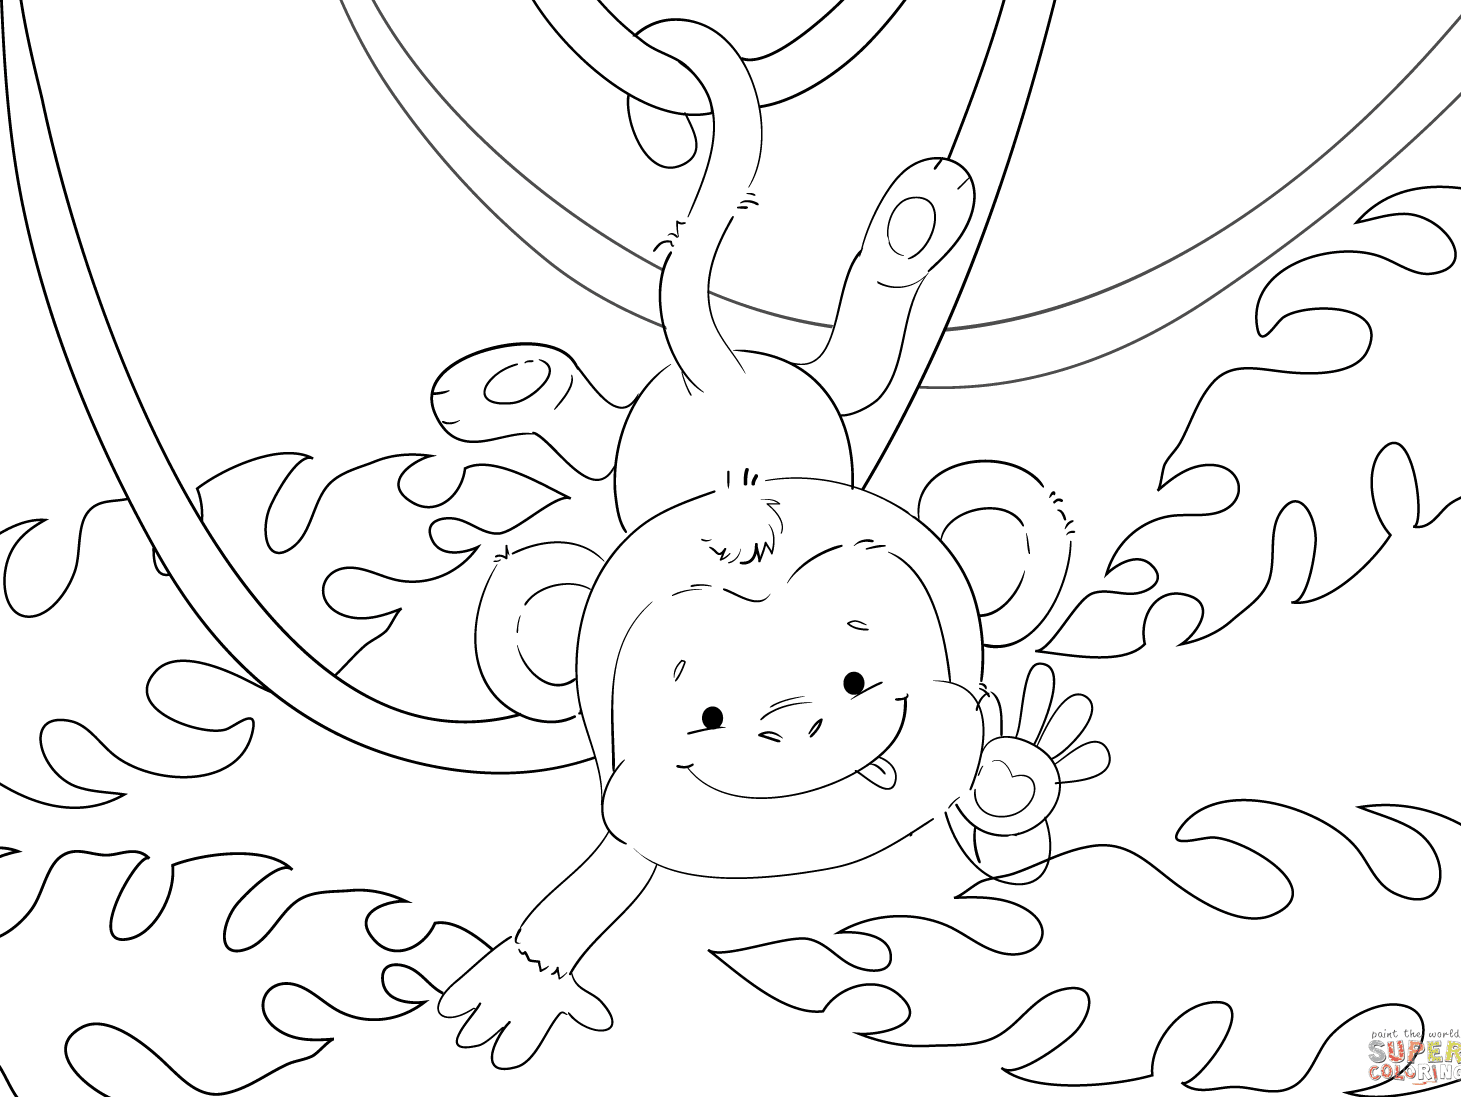 Desenho de macaco fofo